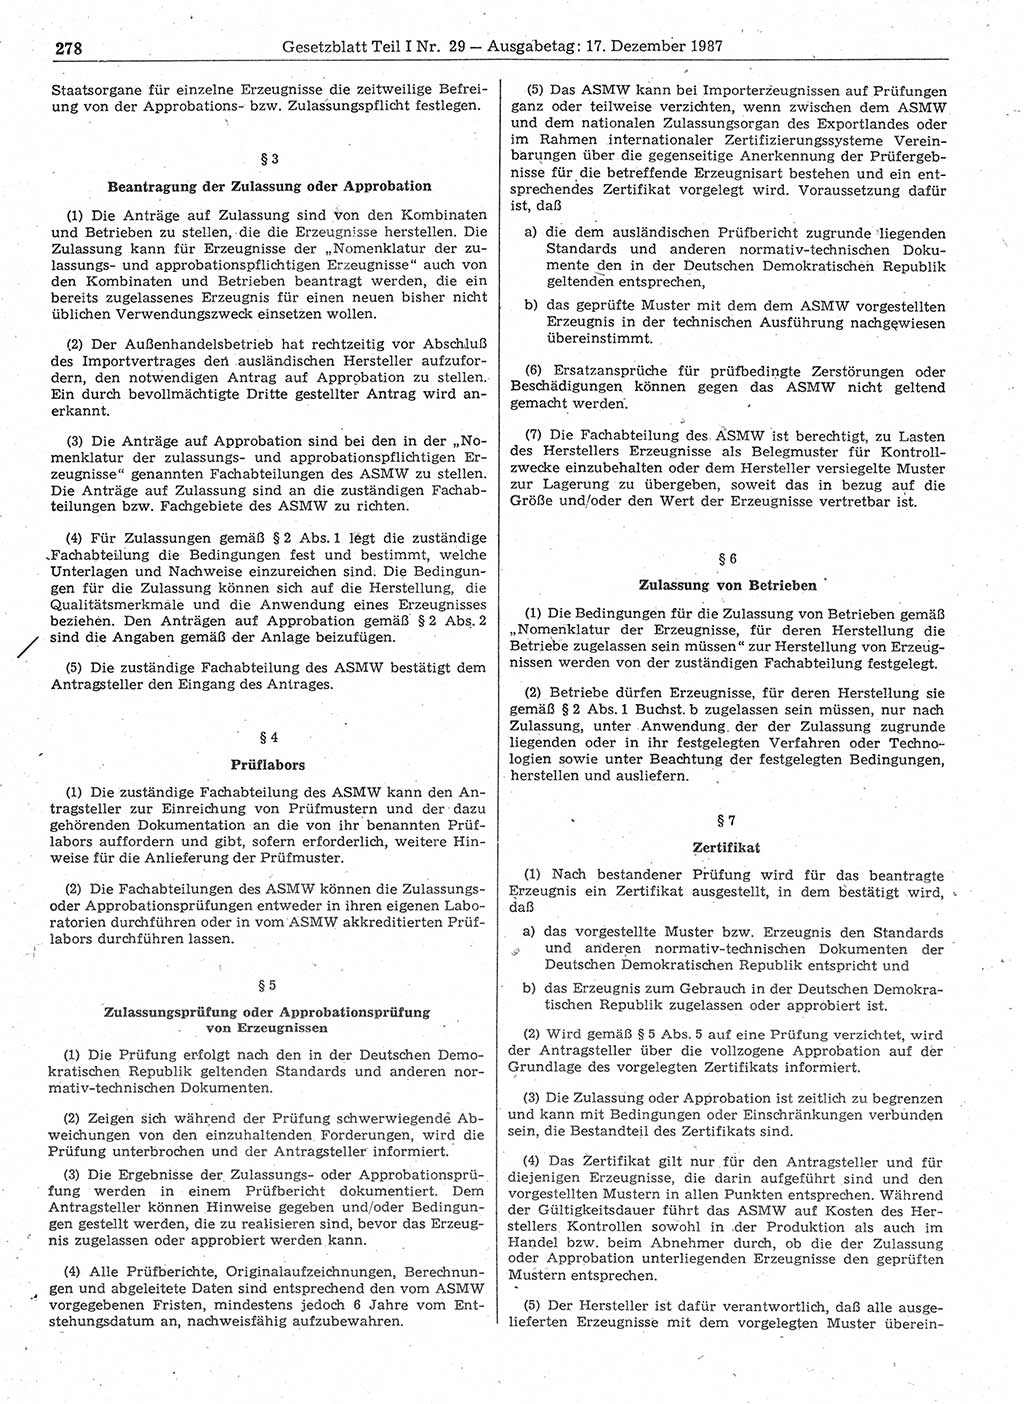 Gesetzblatt (GBl.) der Deutschen Demokratischen Republik (DDR) Teil Ⅰ 1987, Seite 278 (GBl. DDR Ⅰ 1987, S. 278)